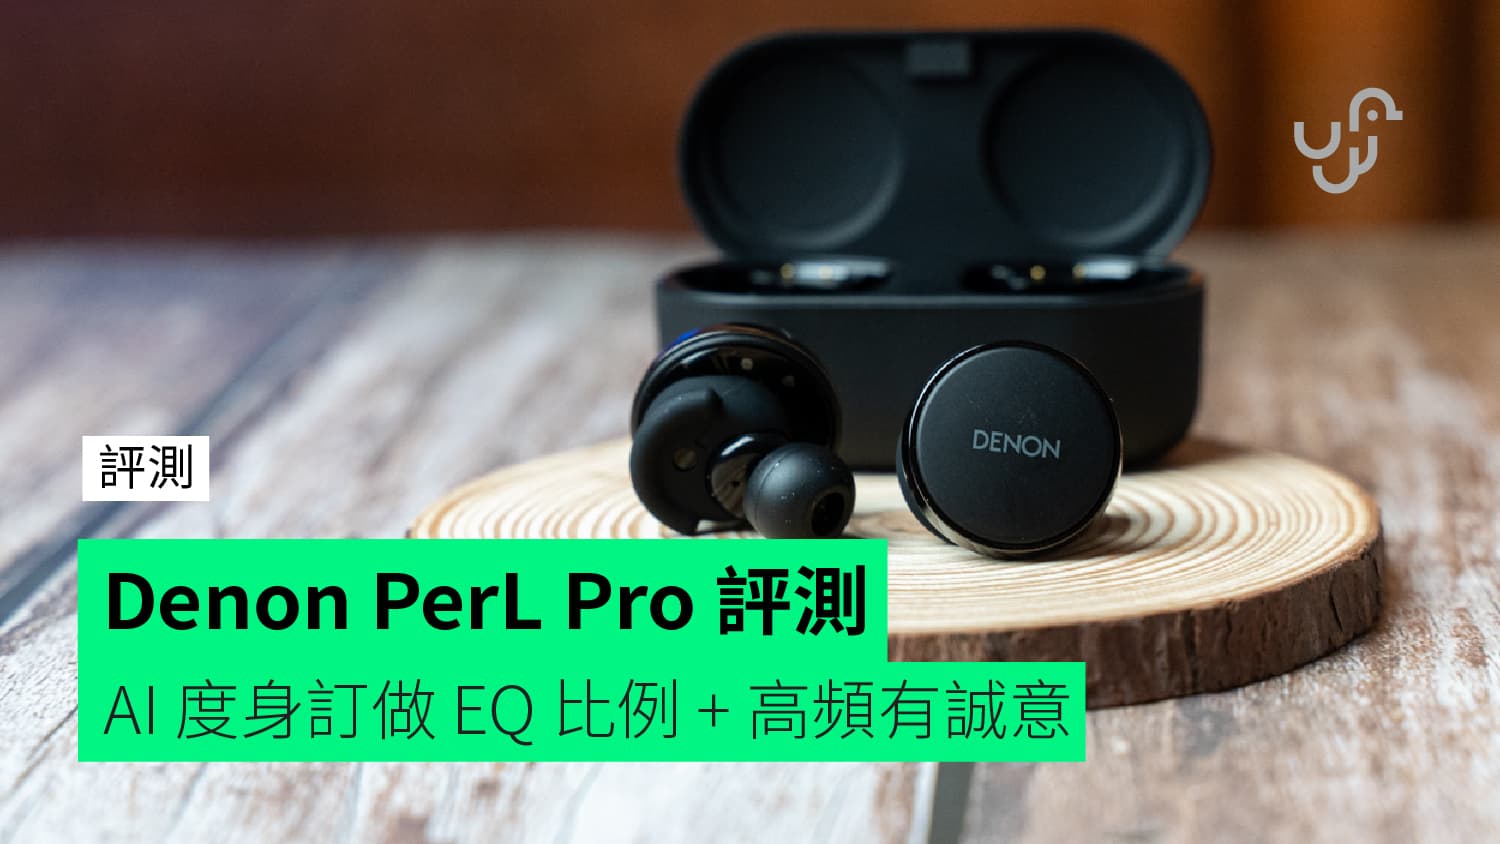 評測】Denon PerL Pro 無線藍牙耳機AI 度身訂做個人最佳EQ 比例+ 高頻